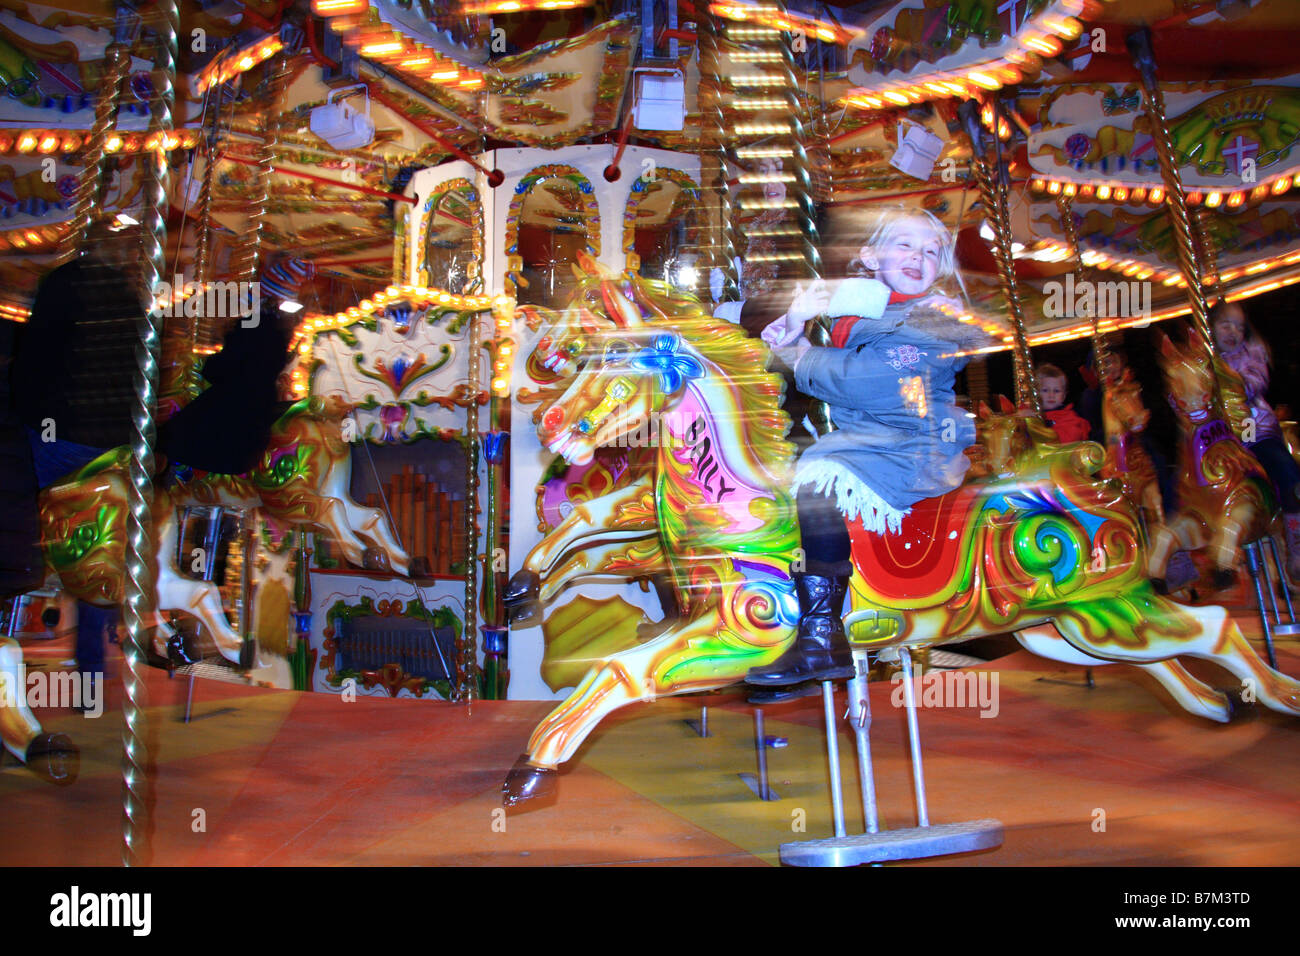 Bambino sfocata equitazione tradizionale illuminato Merry Go Round/giostra fairground ride, Winter Wonderland, Hyde Park, London, Regno Unito Foto Stock